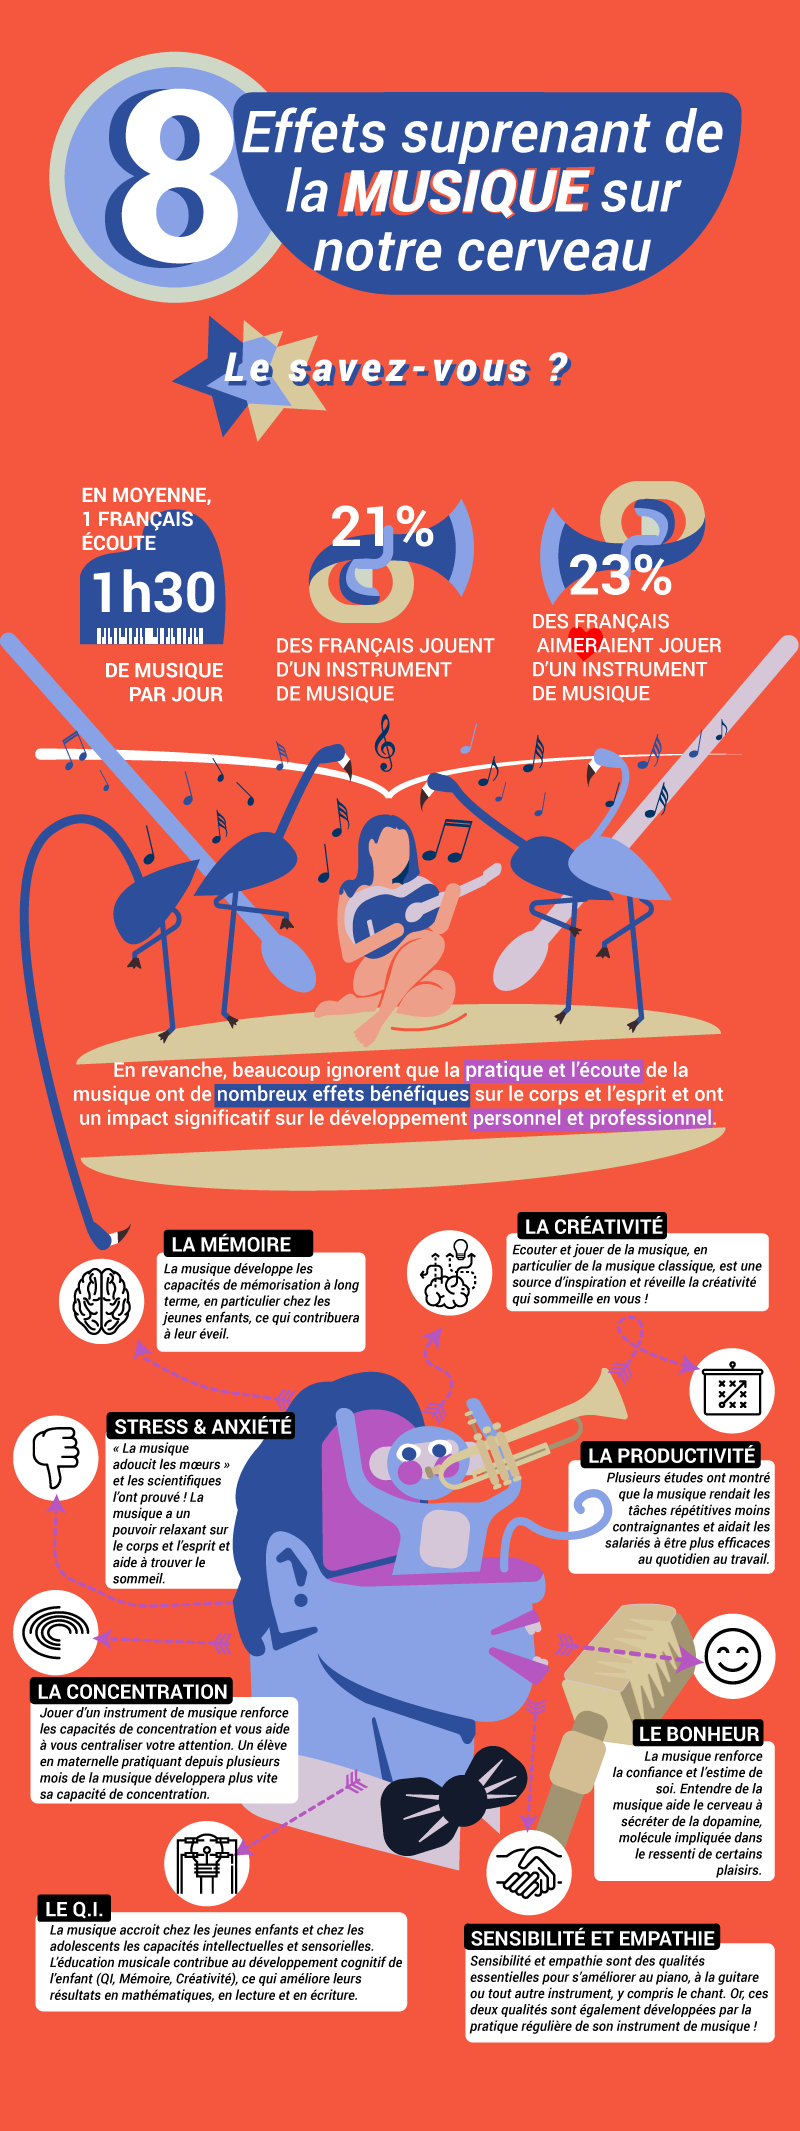 bénéfices de la musique sur le corps et l'esprit | Cours de Musique à Paris - www.musique-paris.fr